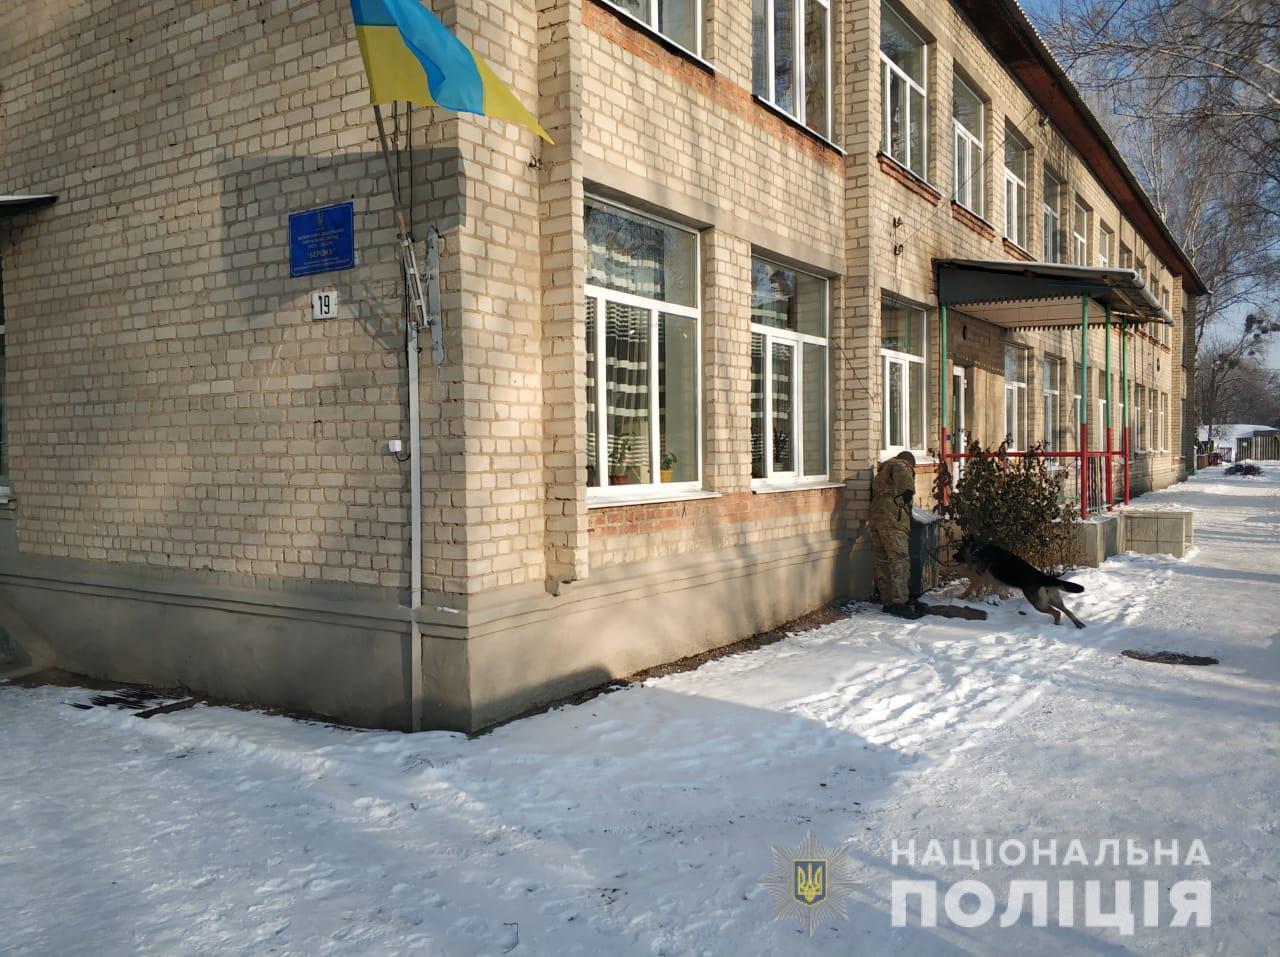 Поліцейські оперативно затримали чоловіка, який повідомив про замінування шести установ в одному з райцентрів Харківщини